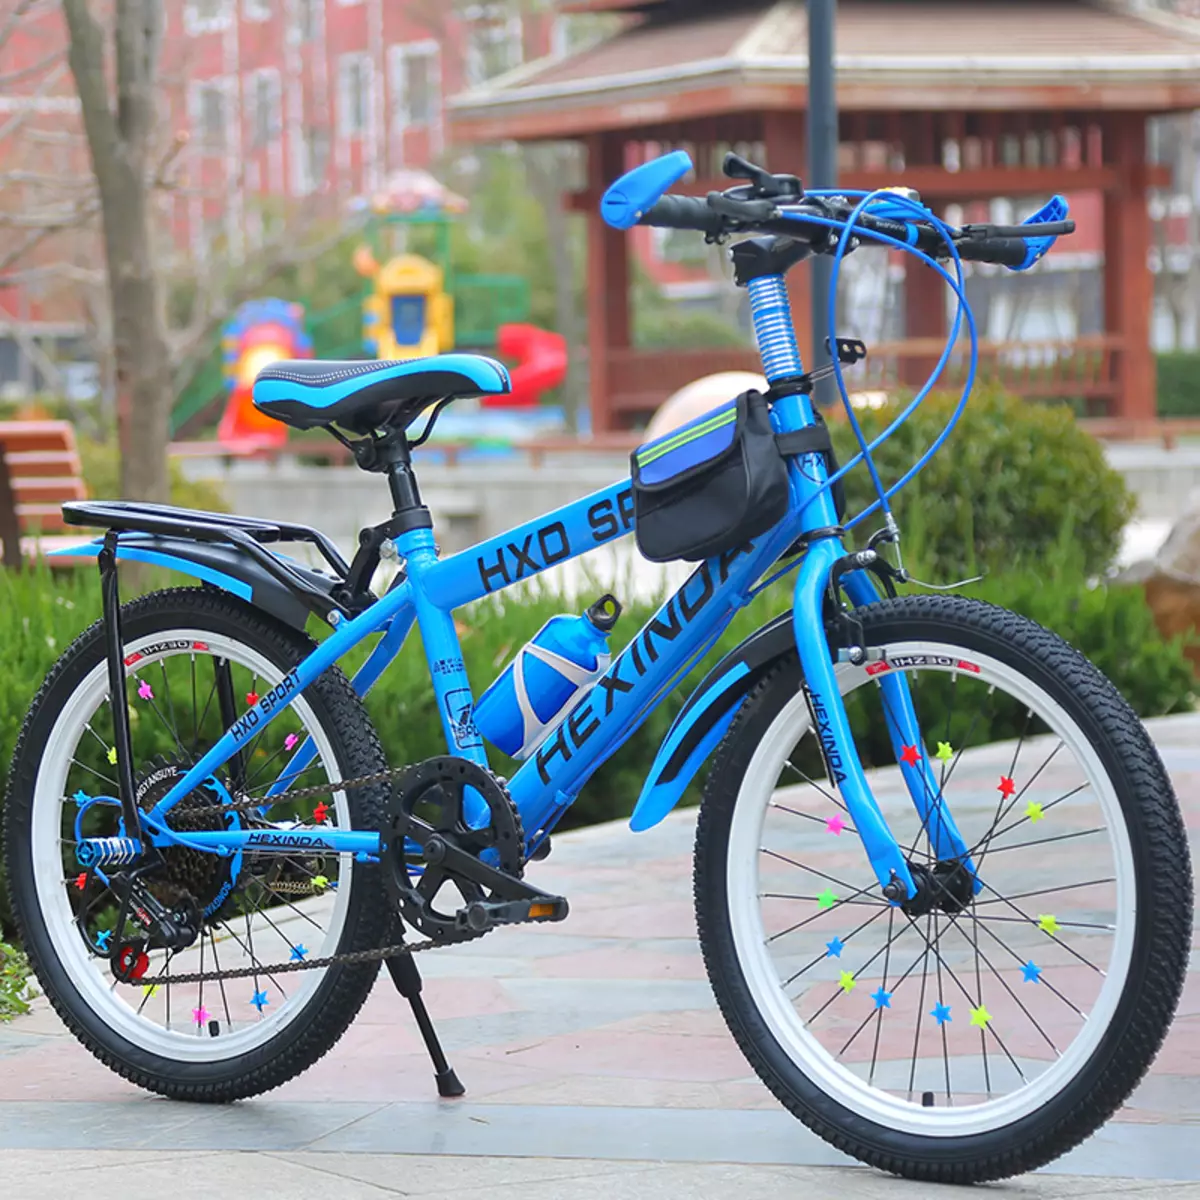 Купить подростковый велосипед для мальчика 10 лет. Стелс скоростник синий. ИЖ байк 20 дюймов. Велосипед стелс 24 дюйма для мальчика. Велосипед стелс 18 дюймов для мальчика.